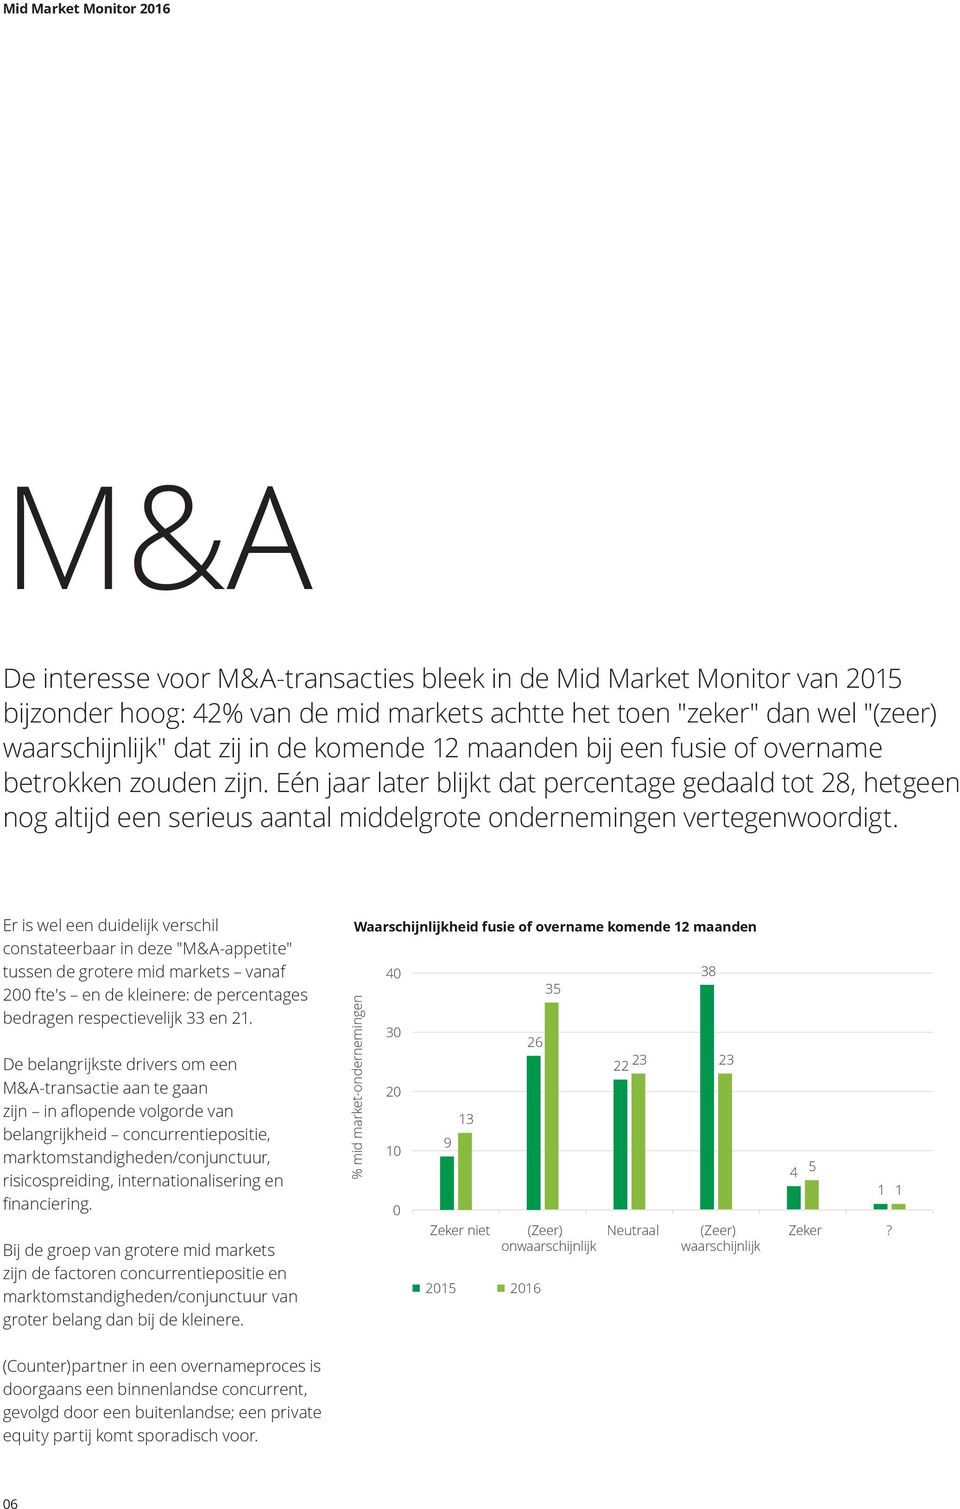 Er is wel een duidelijk verschil constateerbaar in deze "M&A-appetite" tussen de grotere mid markets vanaf 2 fte's en de kleinere: de percentages bedragen respectievelijk 33 en 21.